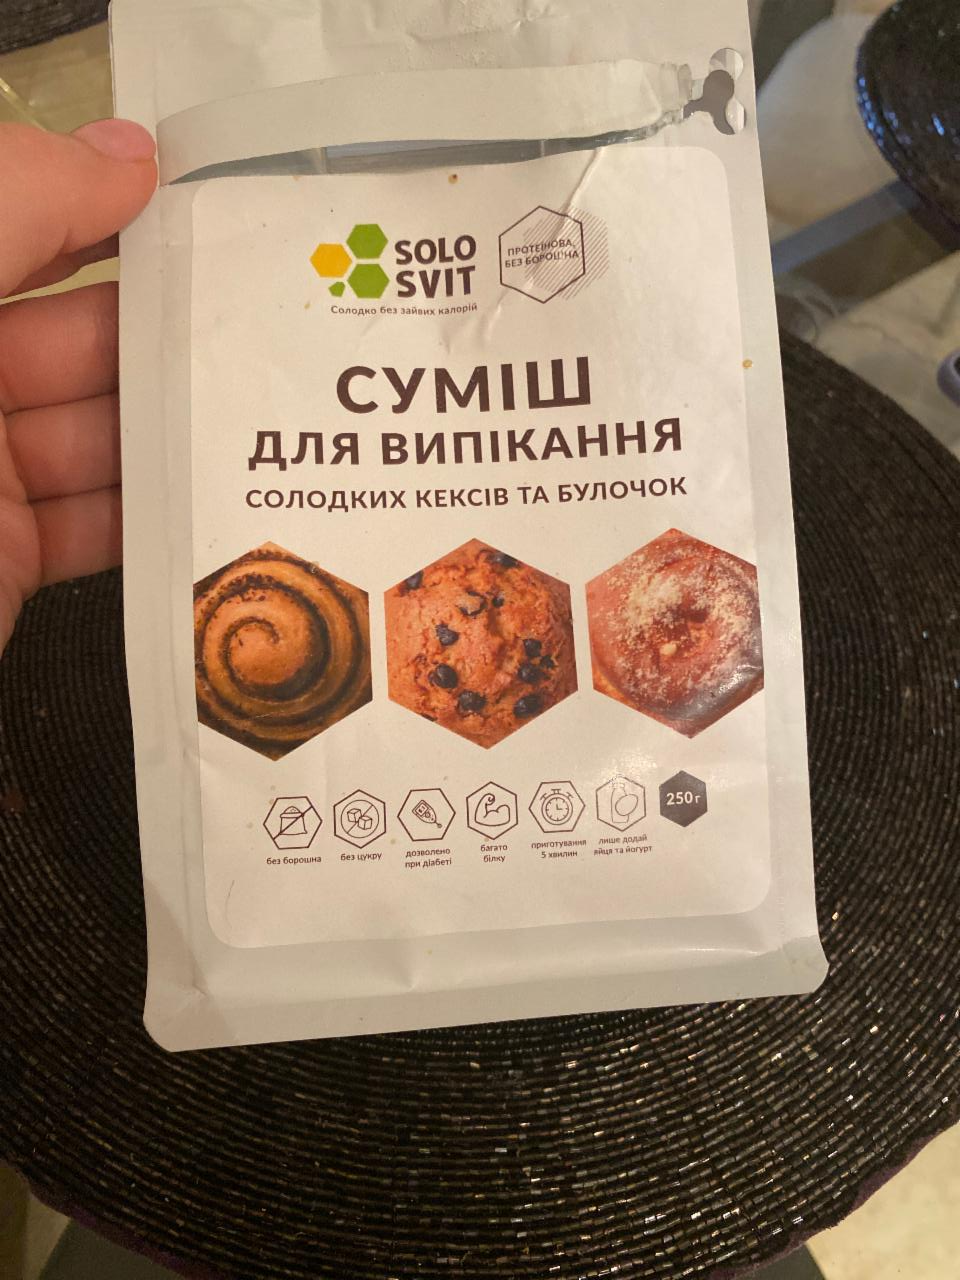 Фото - безуглеводная смесь для выпечки кексов и булочек SoloSvit